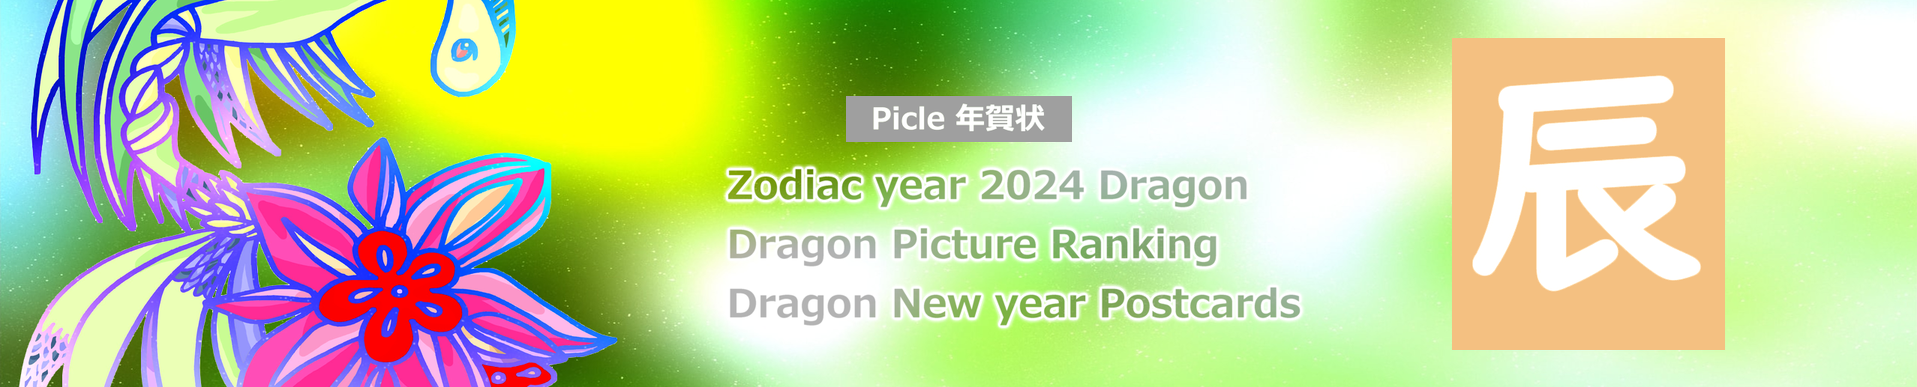 Picle年賀状 2024 Zodiac Dragon art matériel d'image gratuit original image impression téléchargement